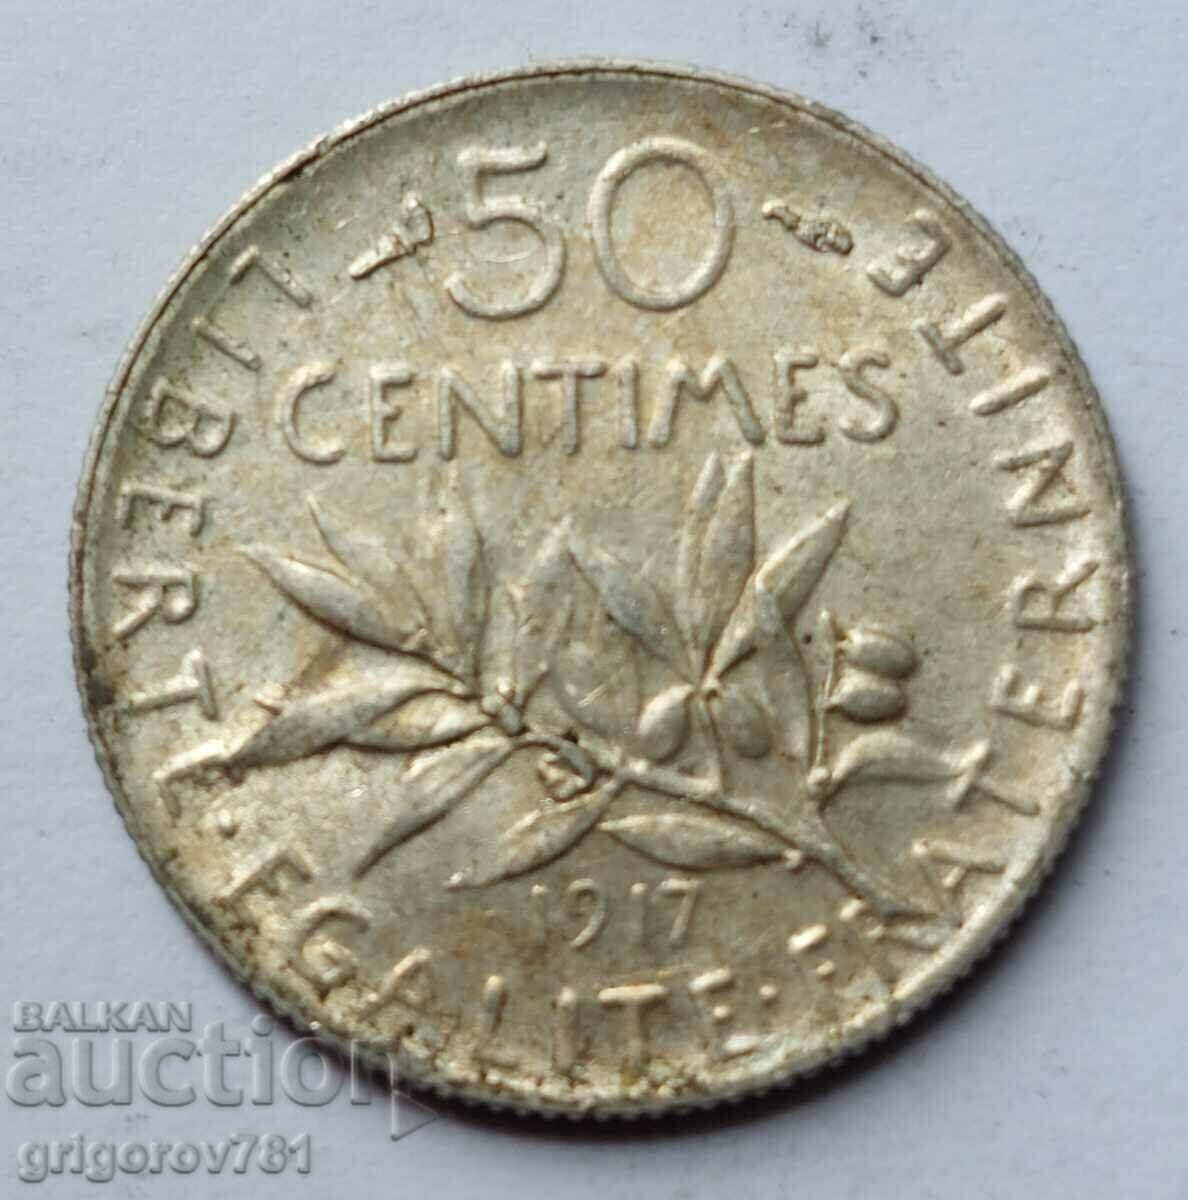 Ασημένιο 50 εκατοστά Γαλλία 1917 - ασημένιο νόμισμα №12